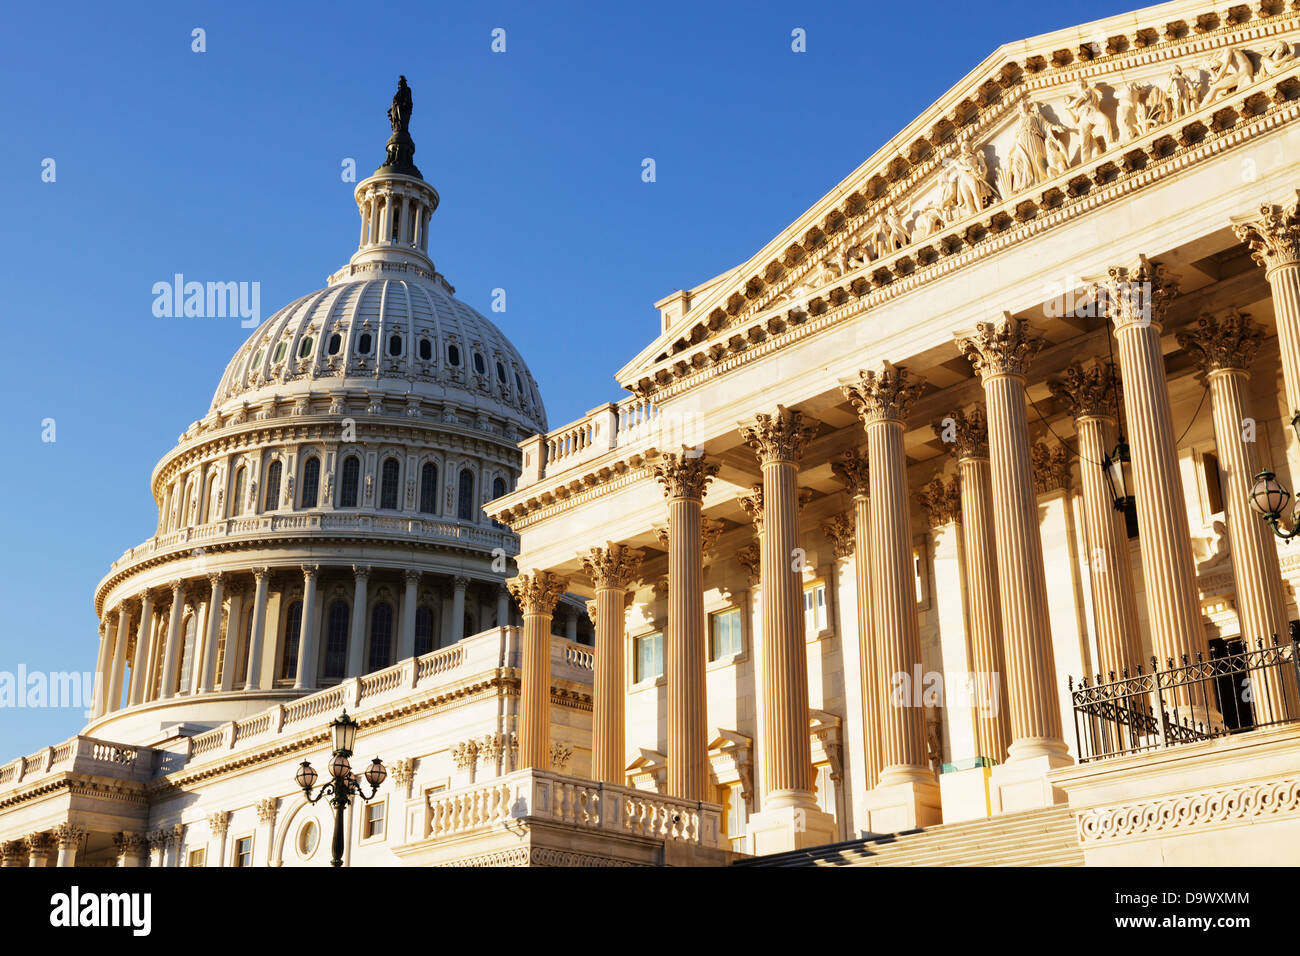 Vista del lado este del Capitolio de los Estados Unidos. Foto de stock